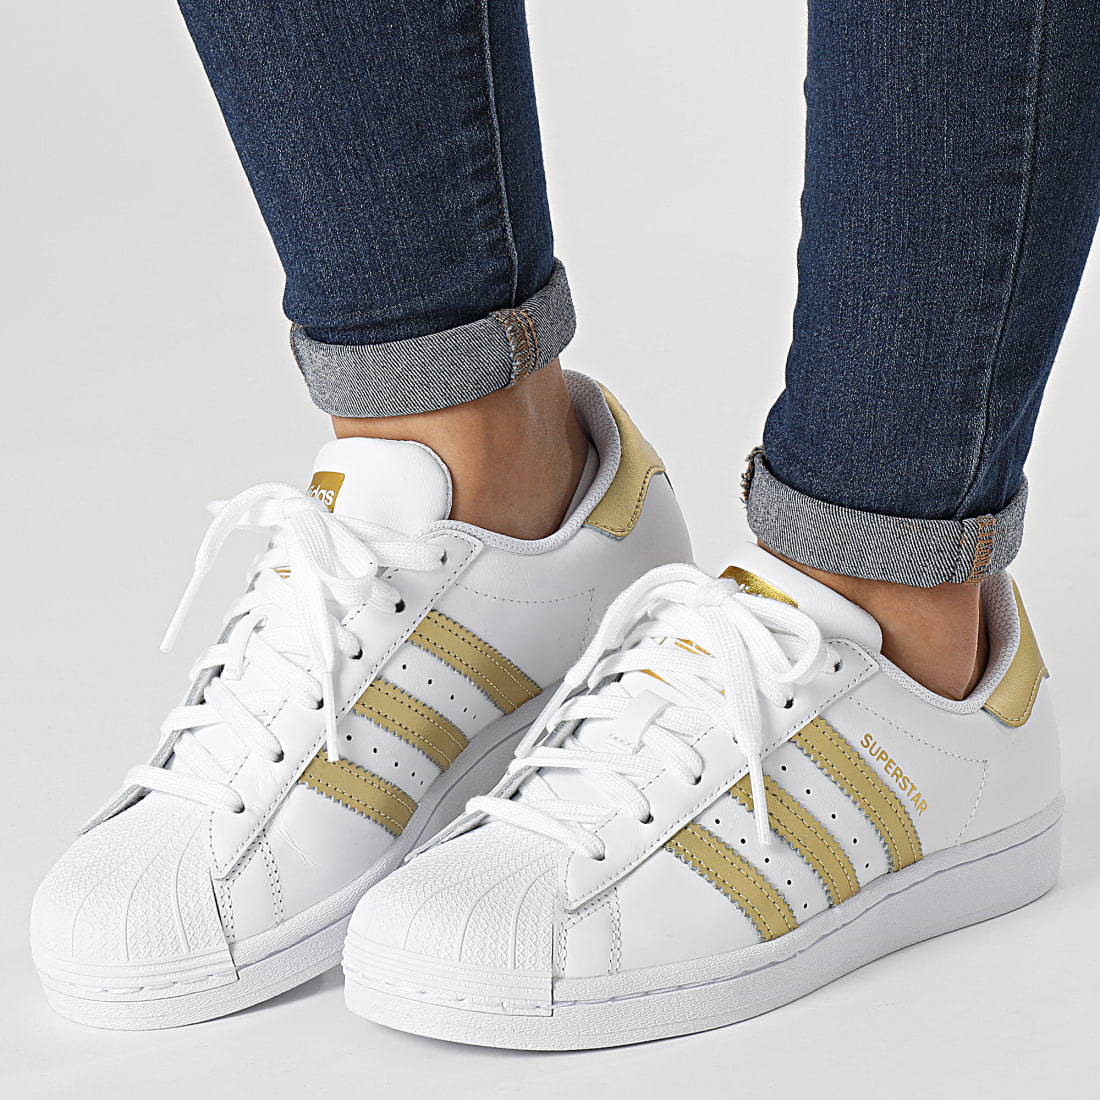 Adidas Originals - Baskets Femme Superstar FX7483 Footwear White Gold Metallic 